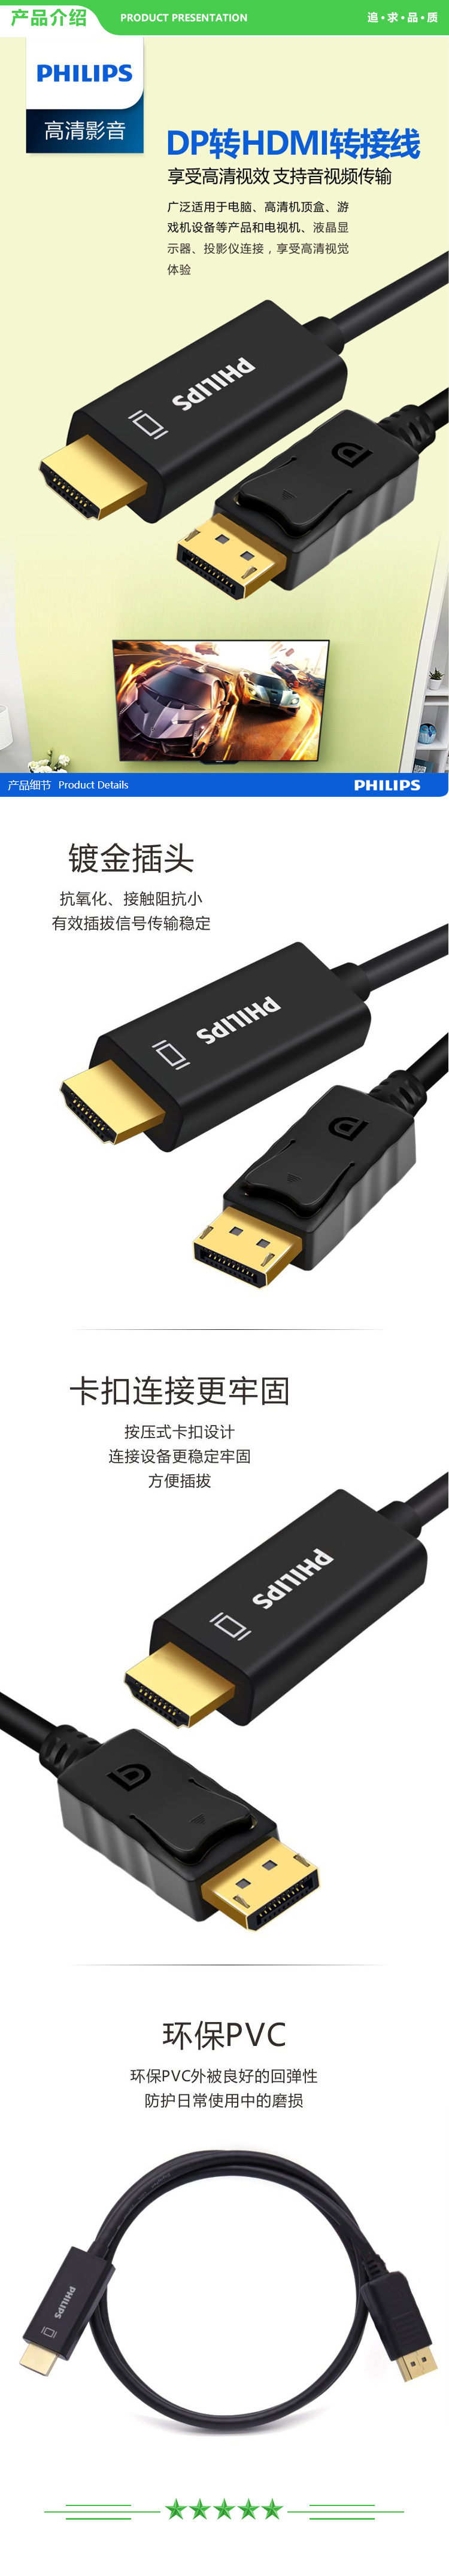 飞利浦 PHILIPS SWA3129A 93 DP转HDMI转接线 4K高清连接线 1.2版 DisplayPort转hdmi公对公 转换线 1米 .jpg